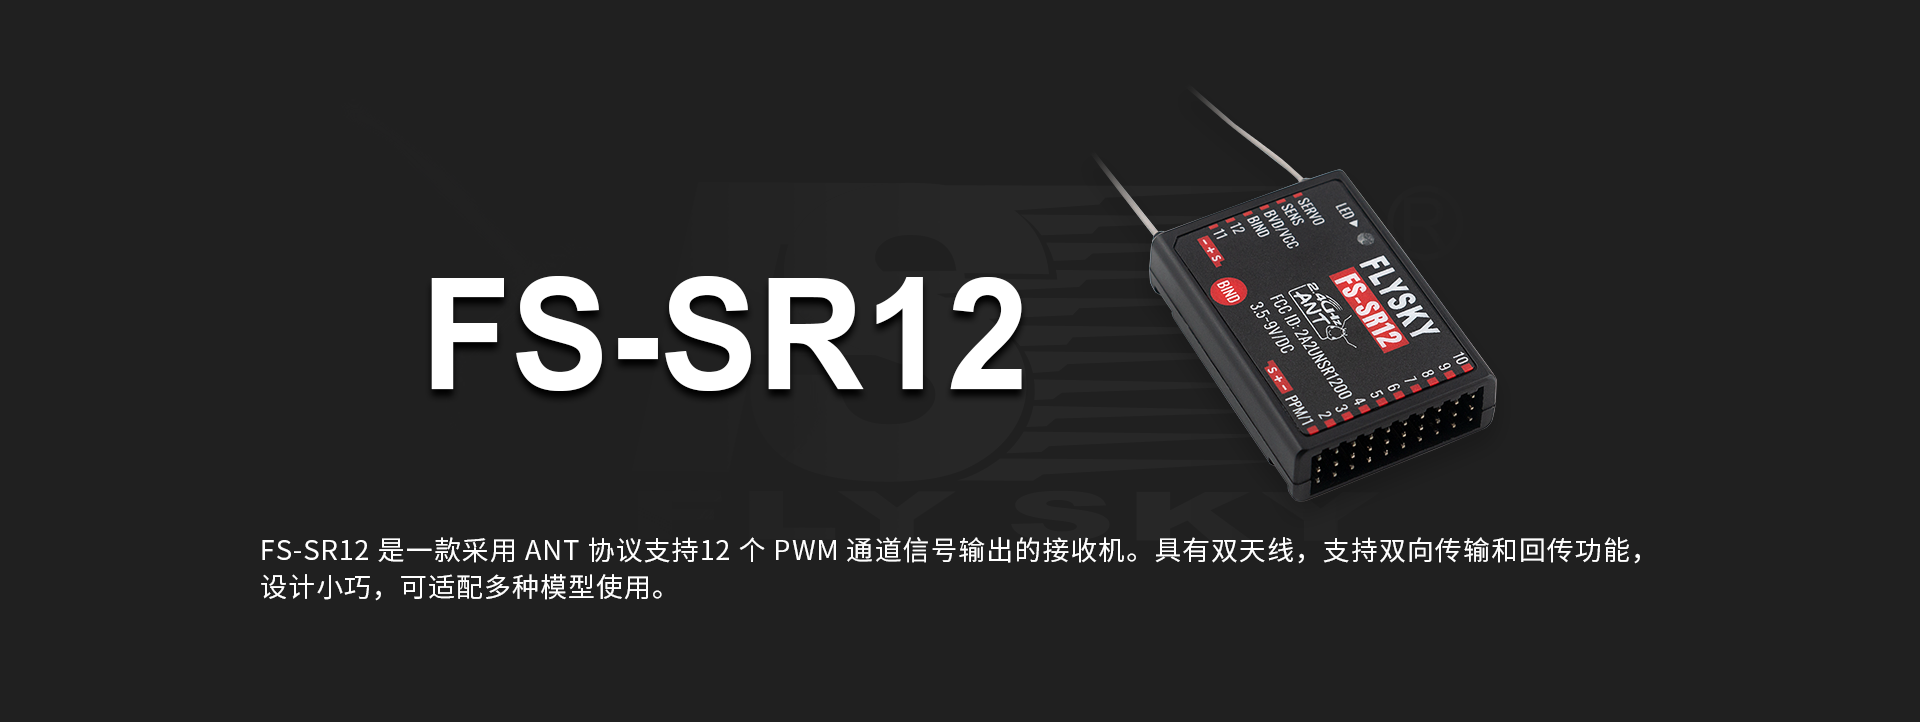 FS-SR12